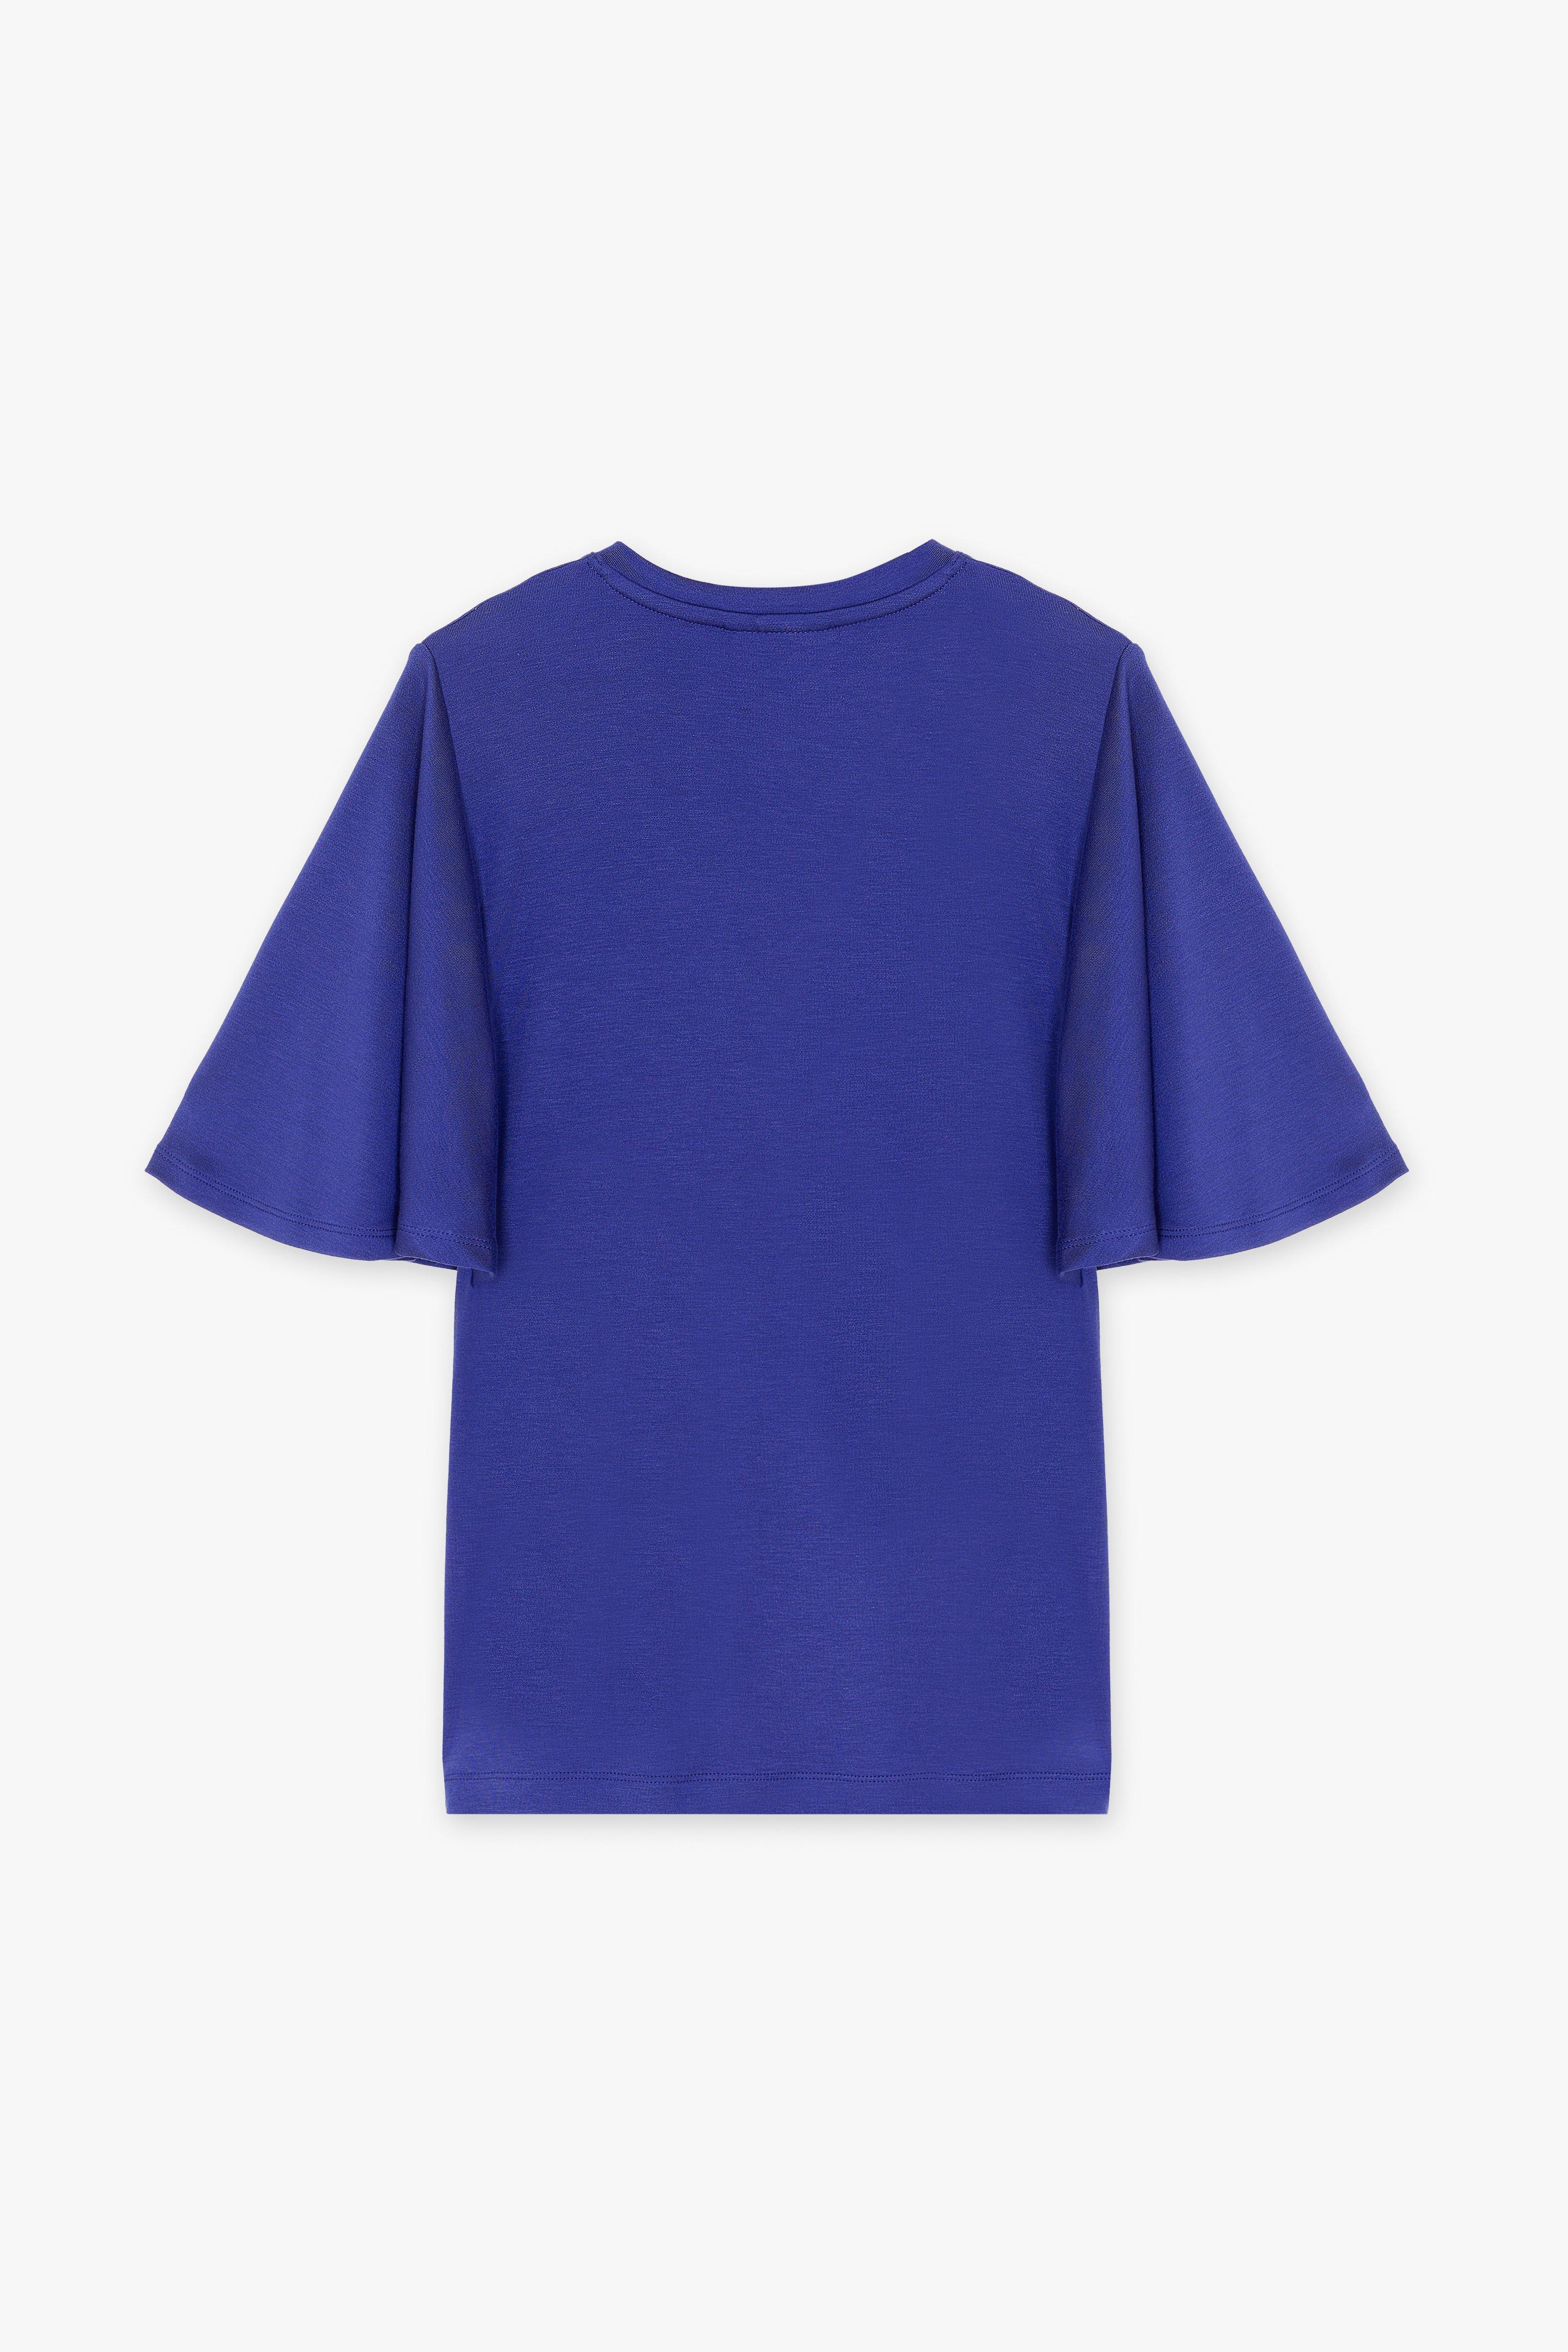 CKS Dames - TIKO - t-shirt korte mouwen - donkerblauw